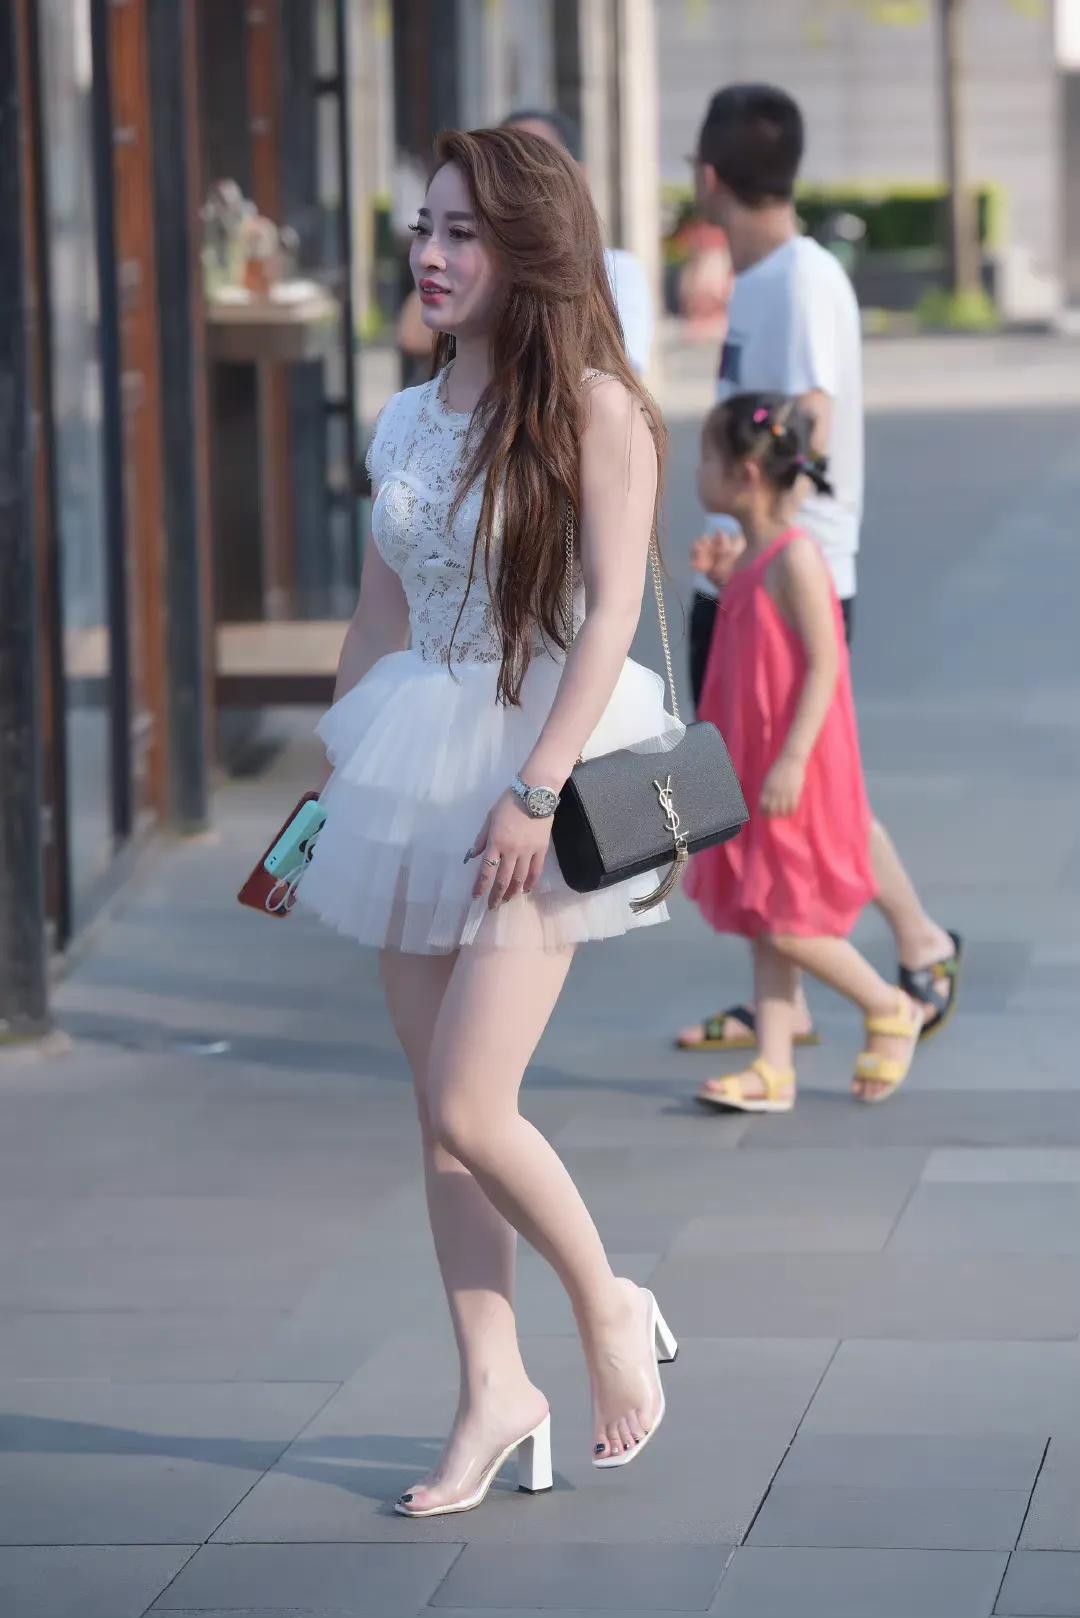 穿搭美图｜街拍水晶高跟鞋搭配白色蕾丝裙穿搭的时尚气质御姐